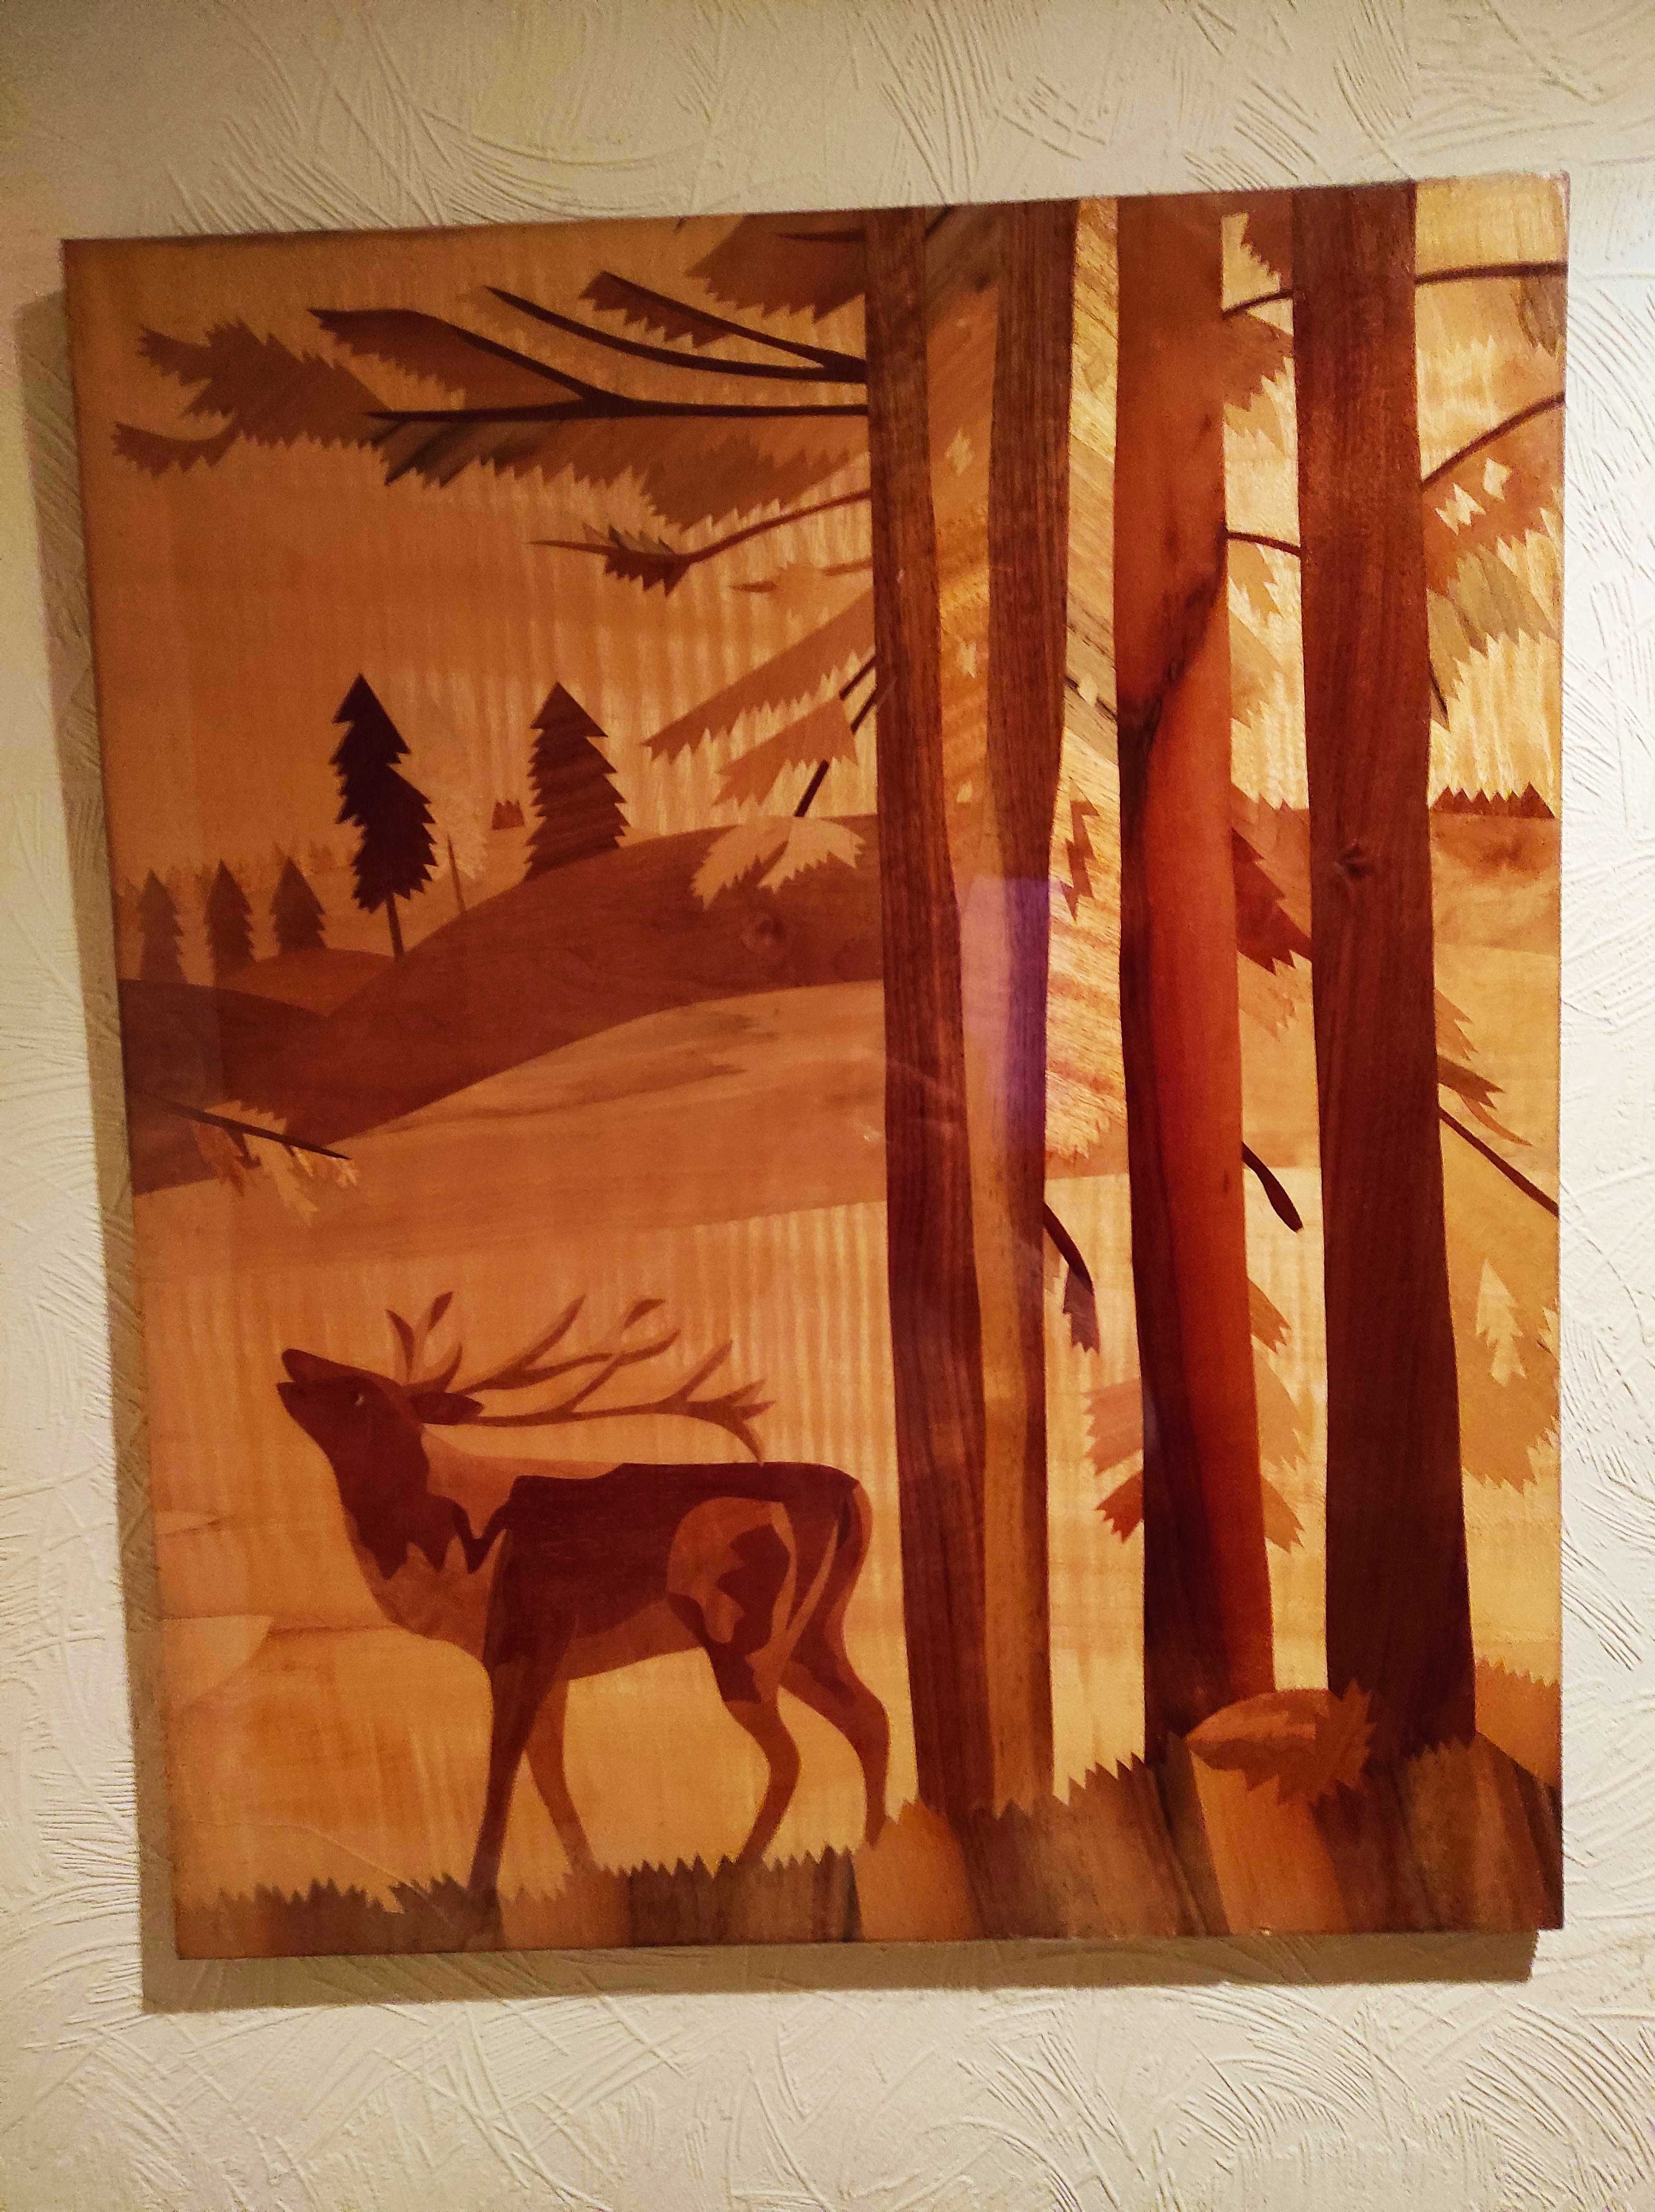 Kартина Олень в лесу